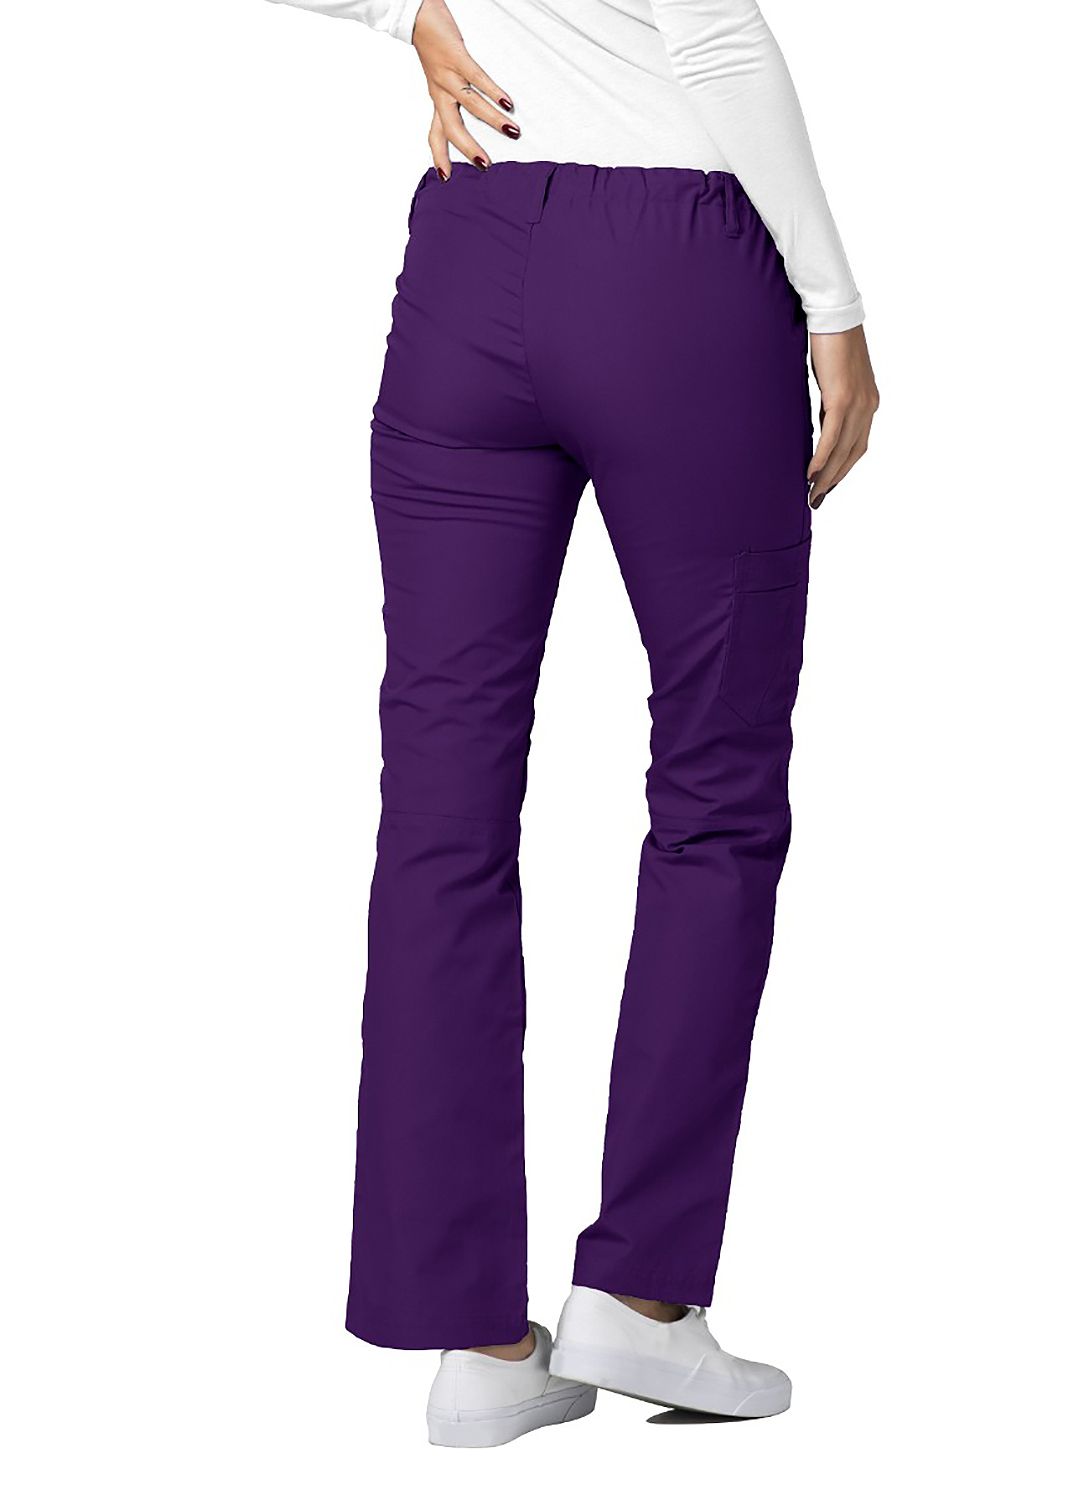 Low-Rise Drawstring Pants by AdarXS-3XL  / Purple